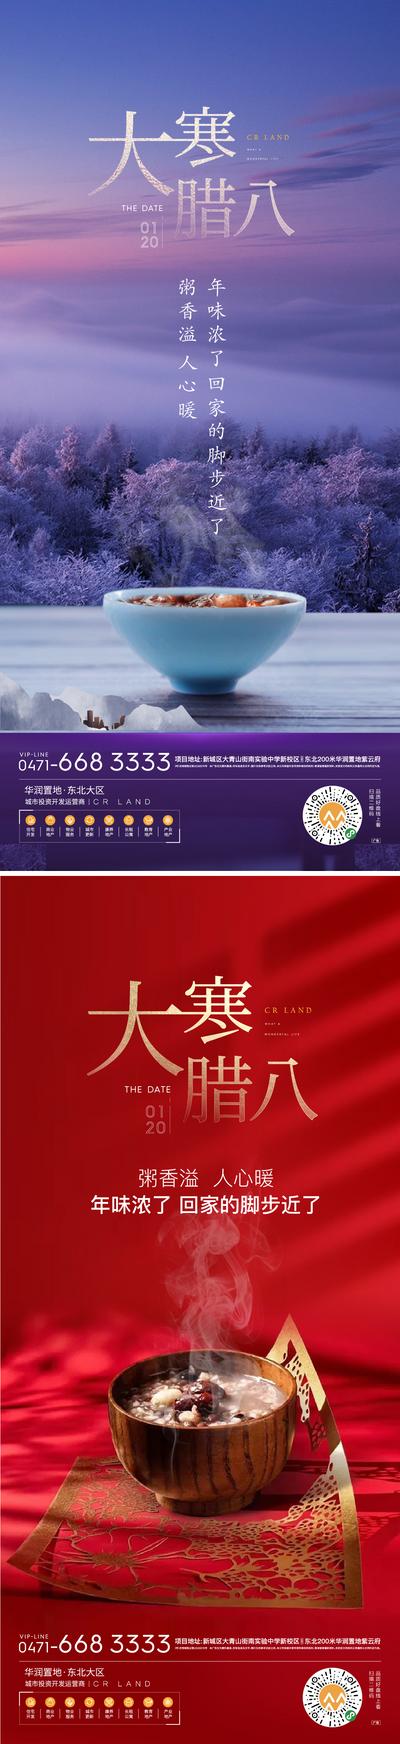 南门网 海报 房地产 中国传统节日 腊八节 腊八粥 二十四节气 大寒